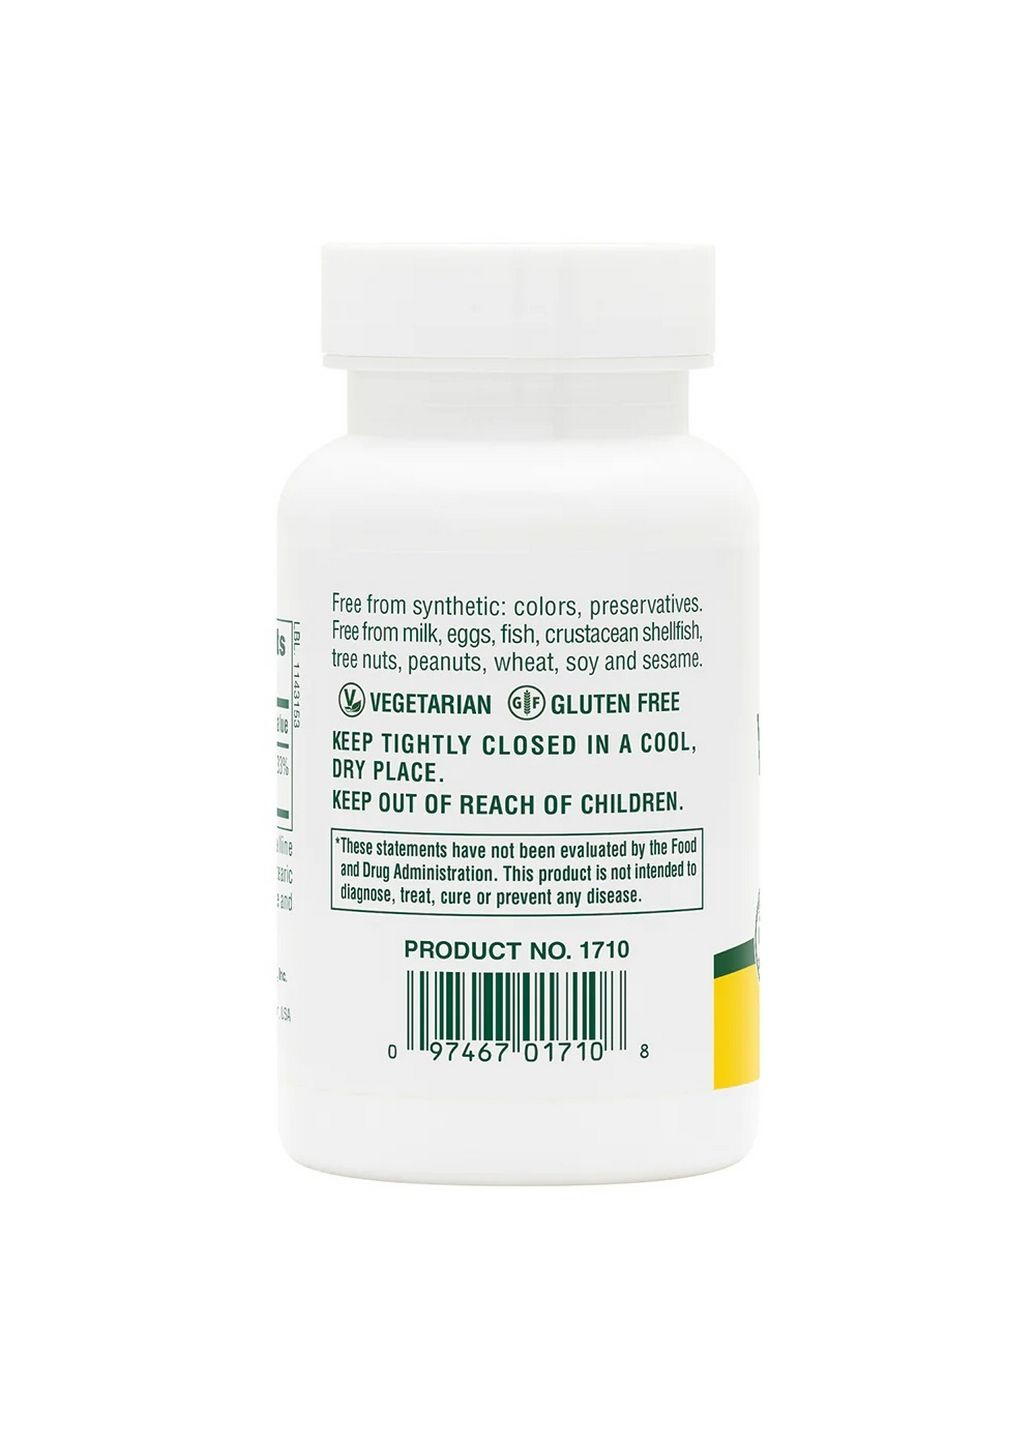 Вітаміни та мінерали Vitamin B12 500 mcg, 90 таблеток Natures Plus (293342228)